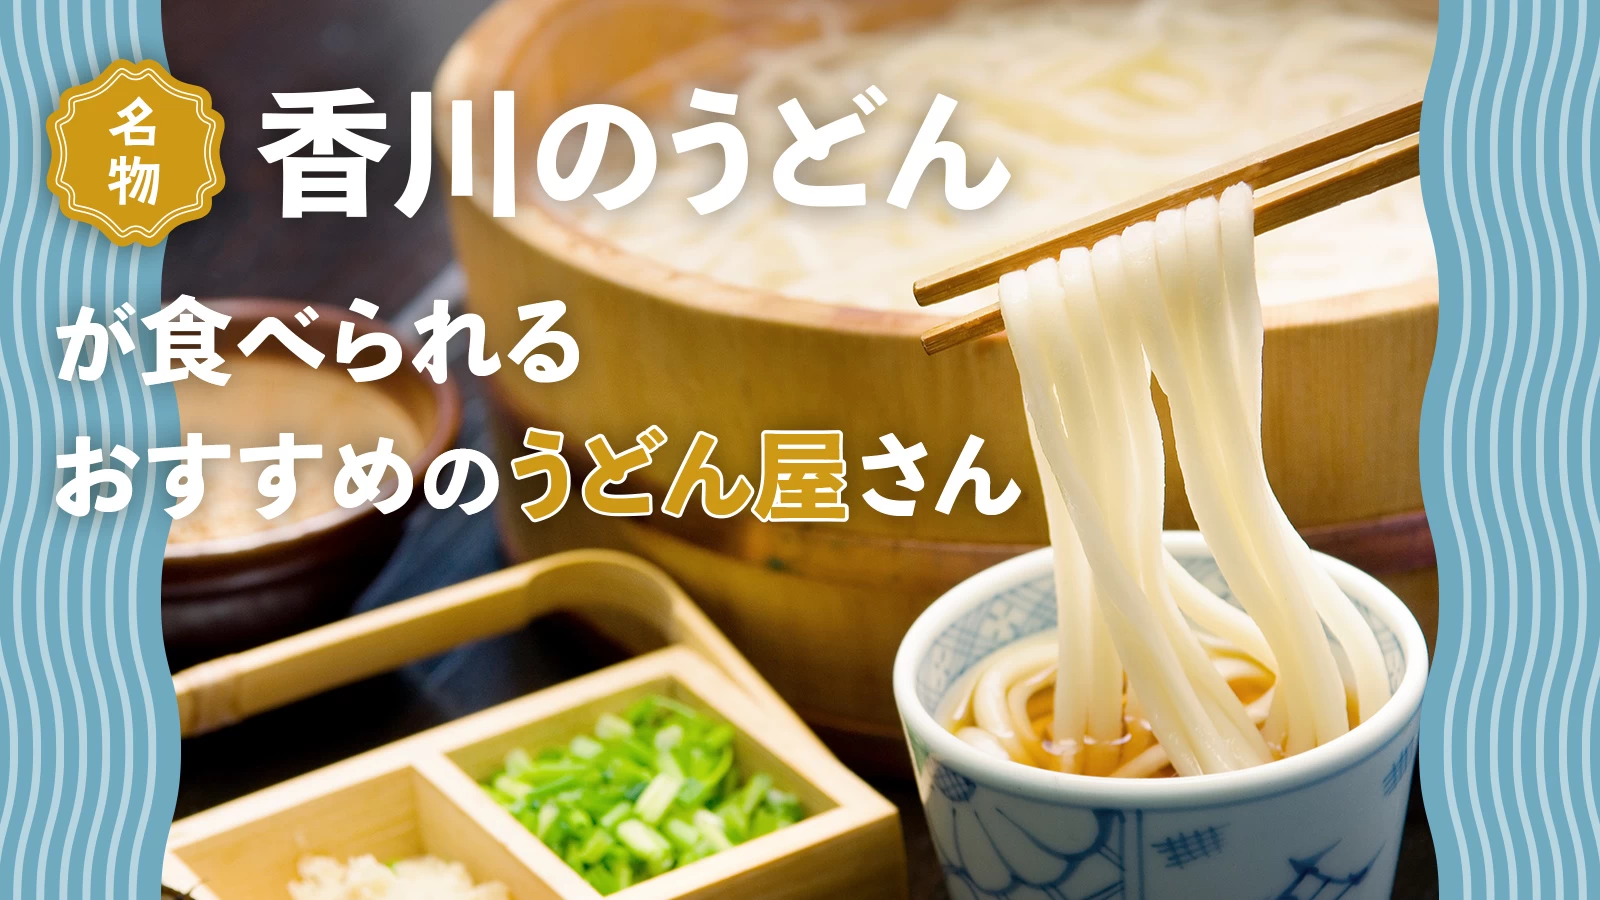 名物“香川のうどん”が食べられるおすすめのうどん屋さん10選